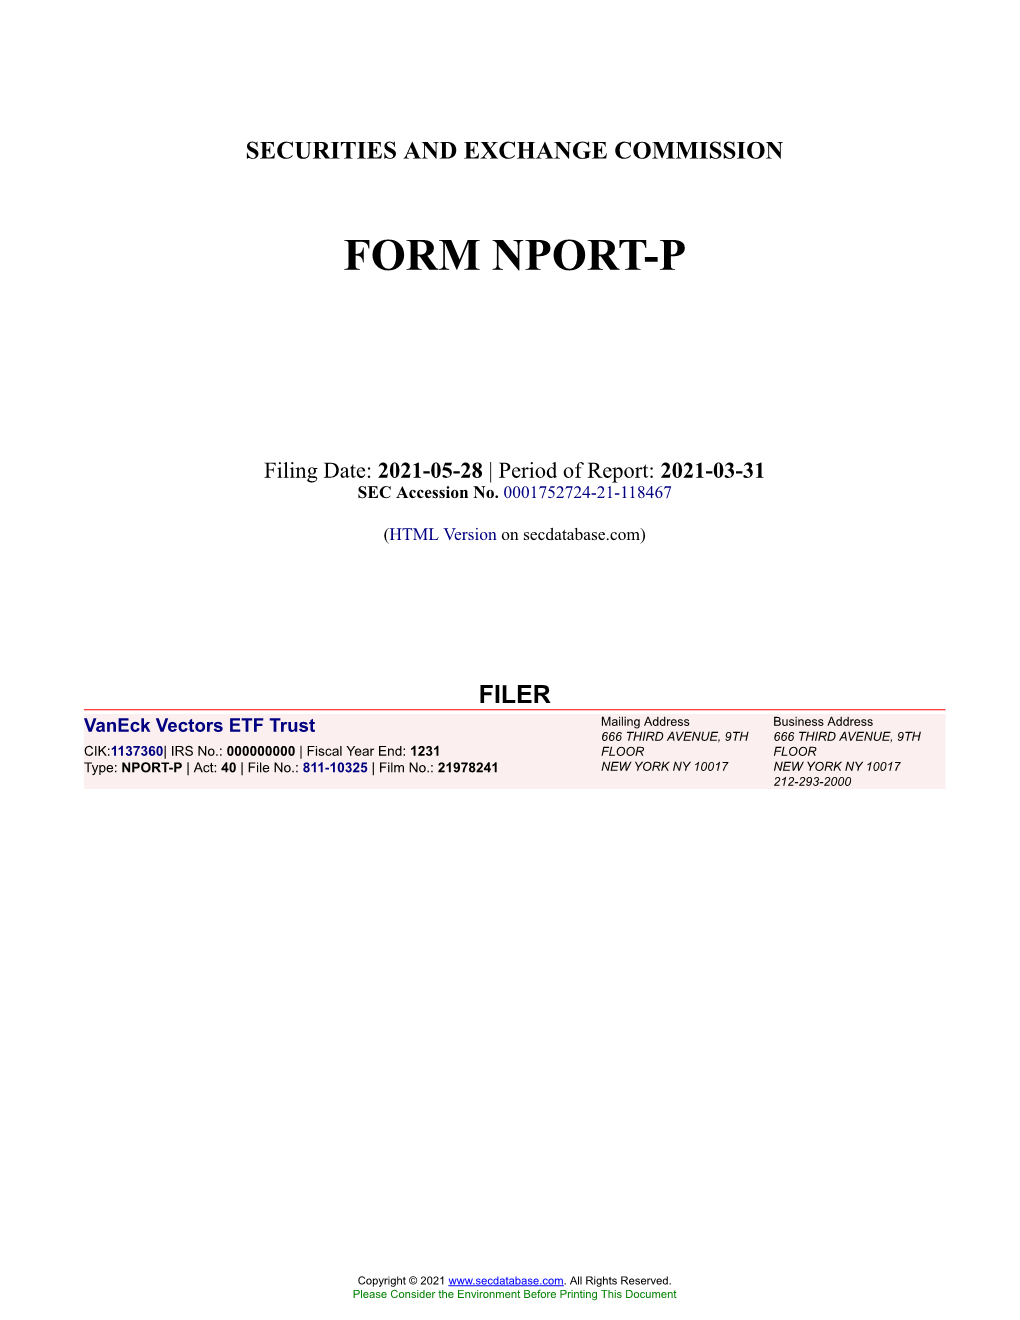 Vaneck Vectors ETF Trust Form NPORT-P Filed 2021-05-28